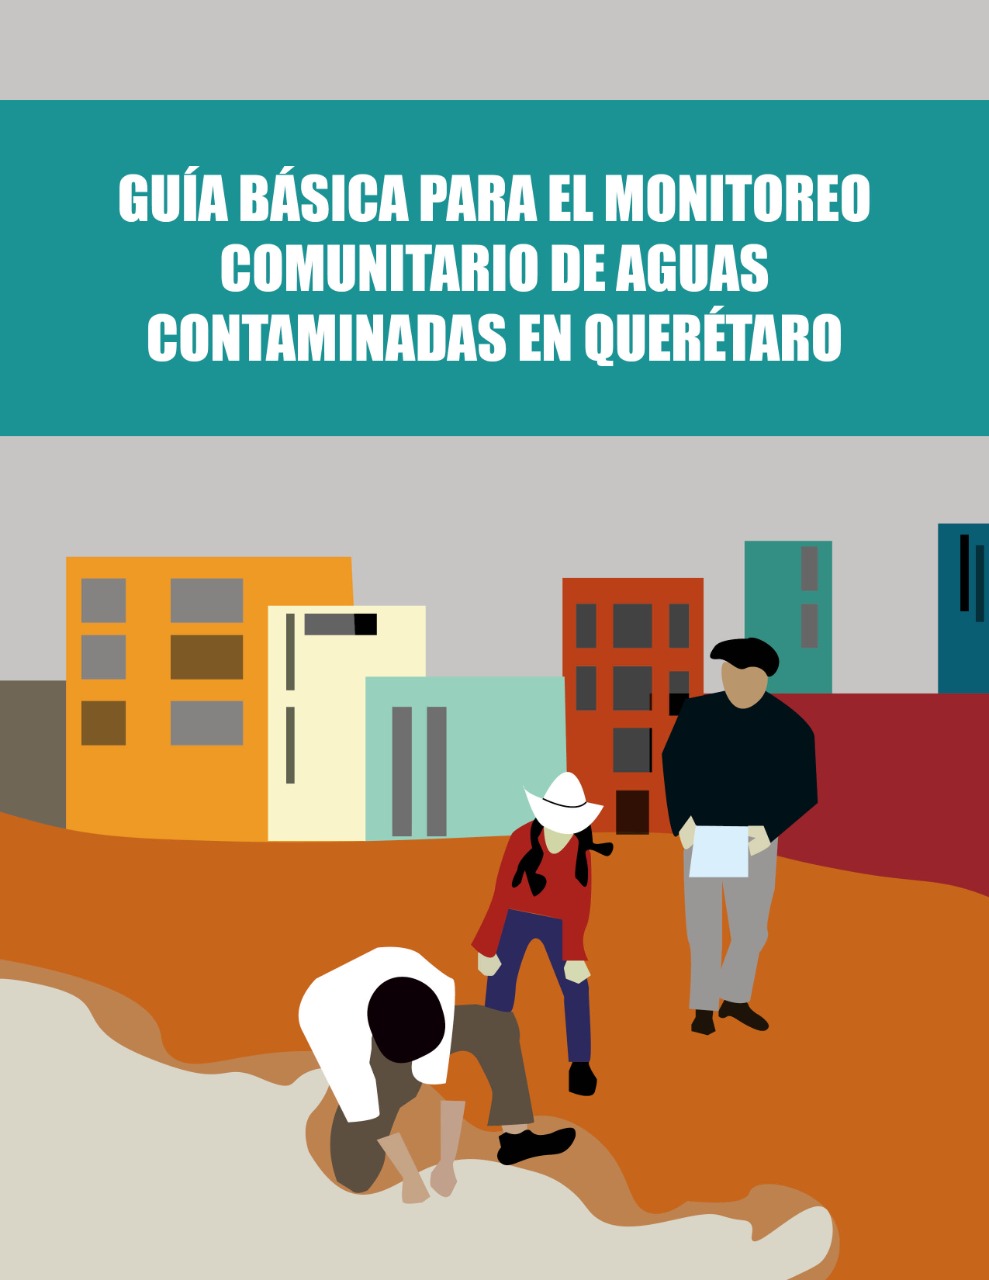 Guía básica para el monitoreo comunitario de aguas contaminadas en Querétaro (Bajo Tierra)